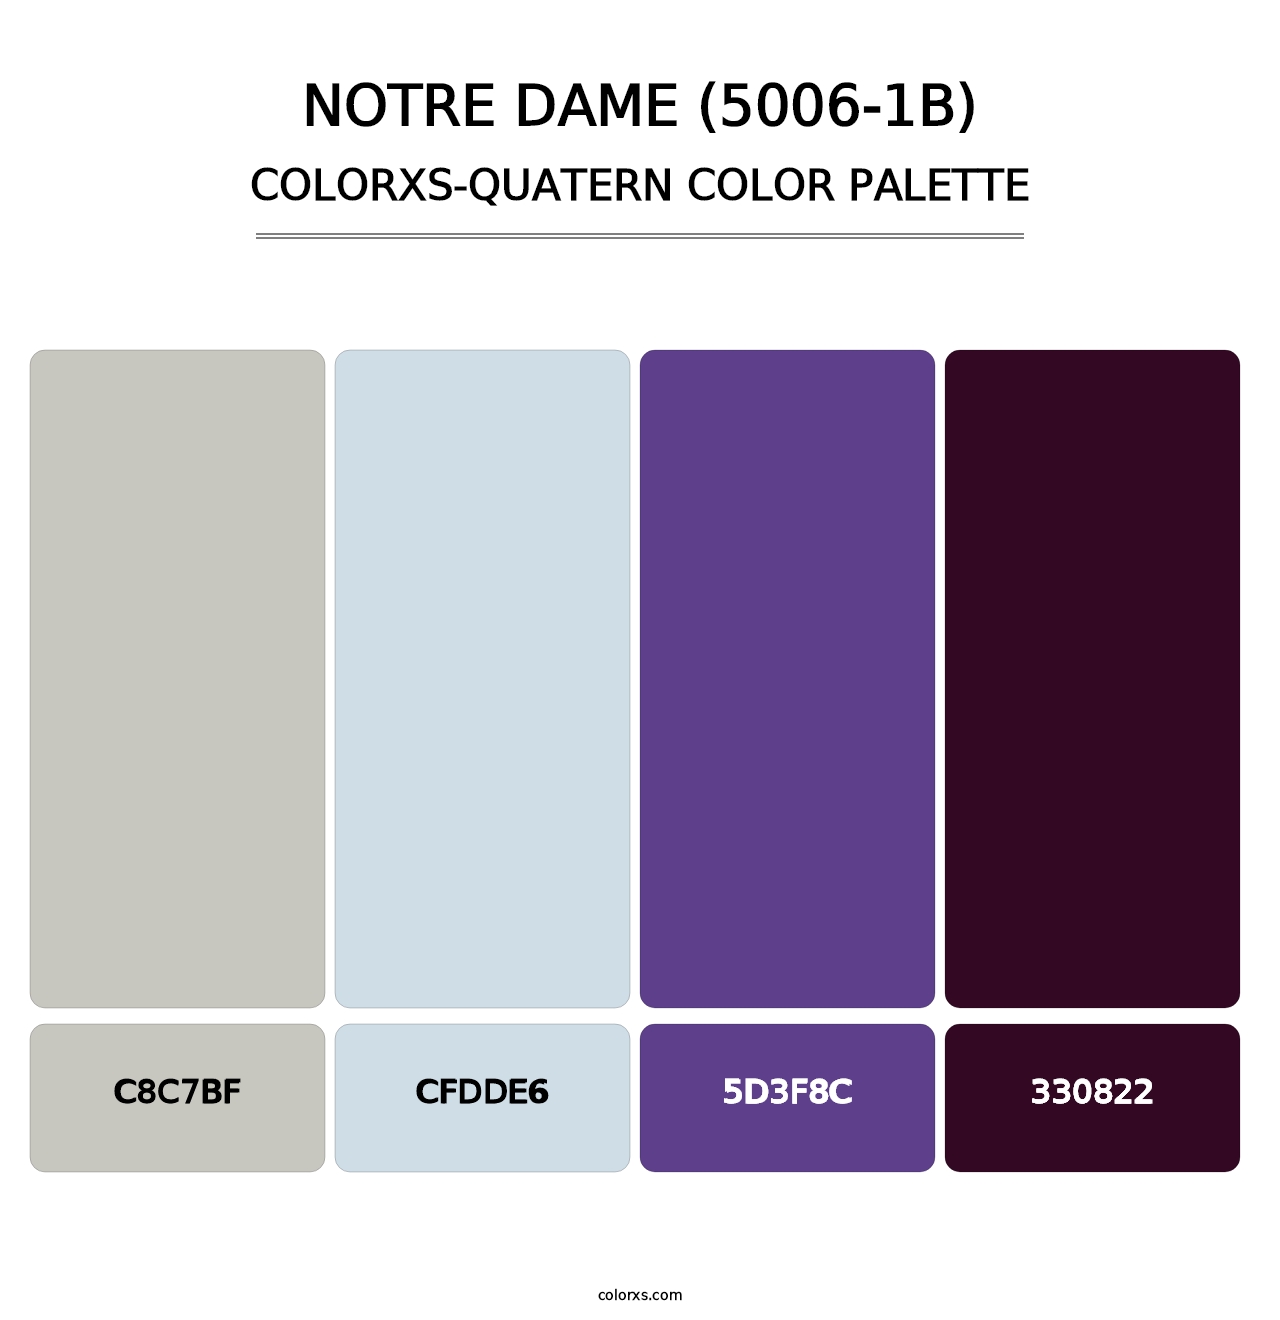 Notre Dame (5006-1B) - Colorxs Quatern Palette